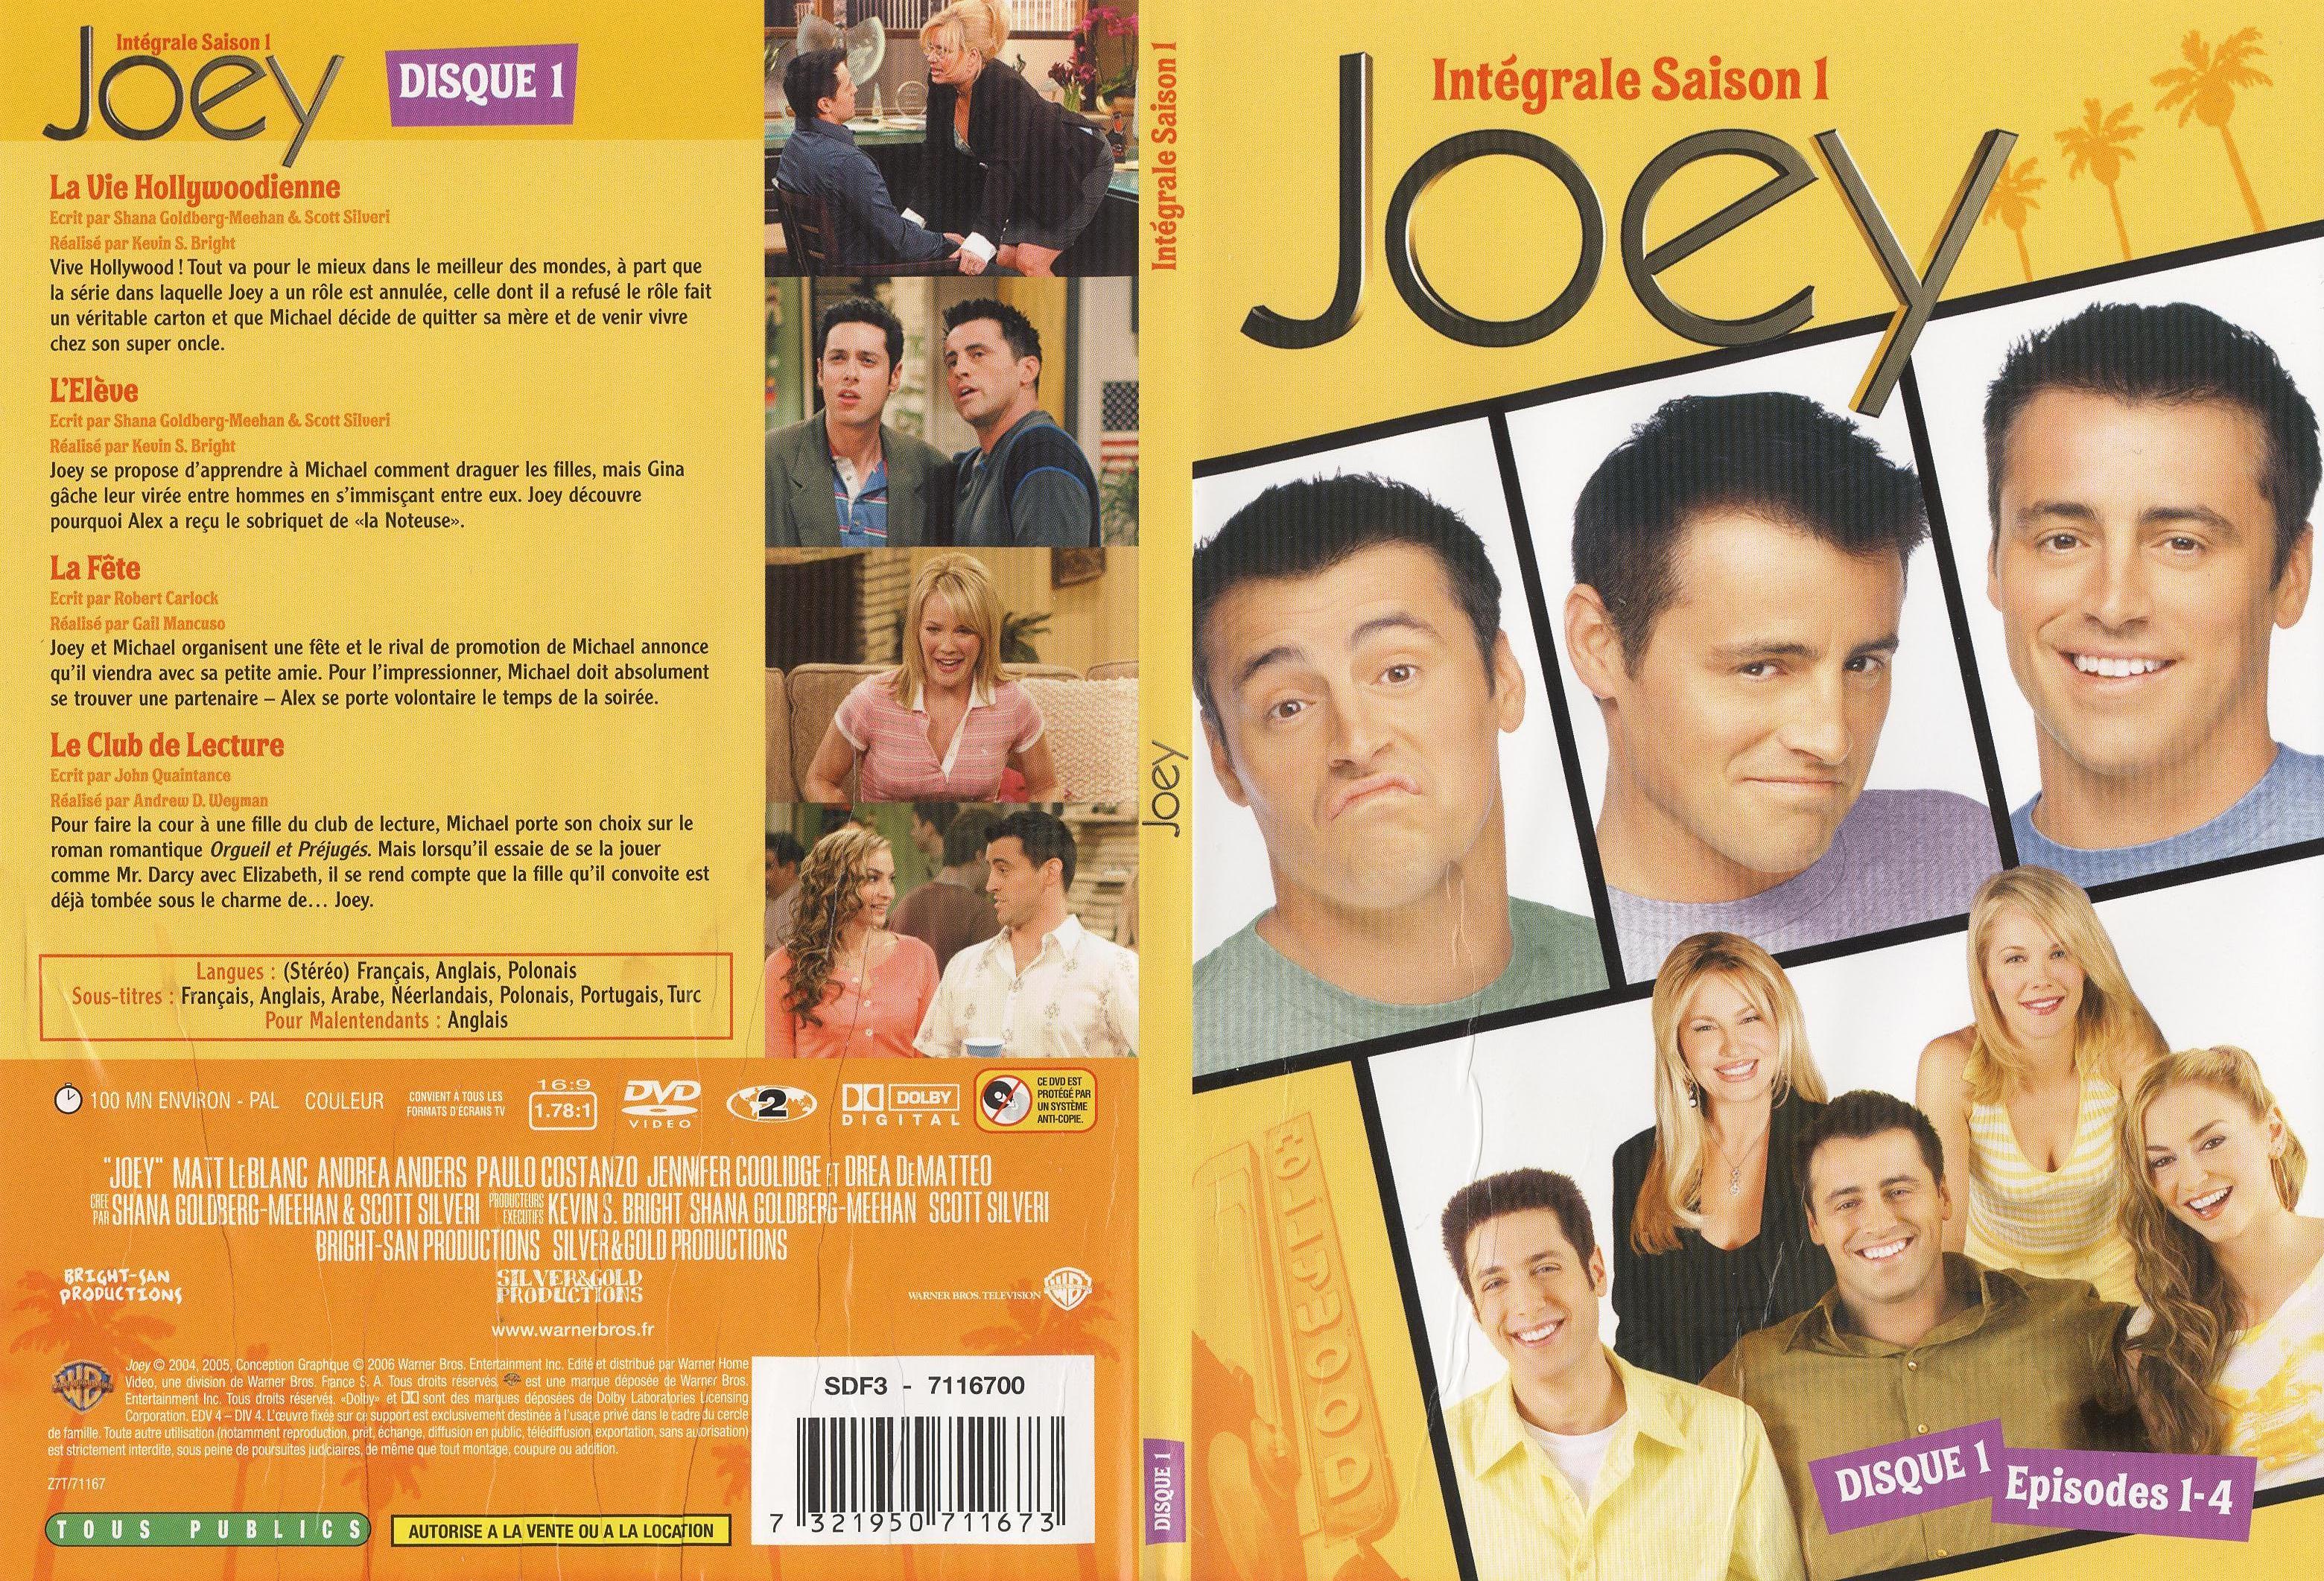 Jaquette DVD Joey saison 1 DVD 1